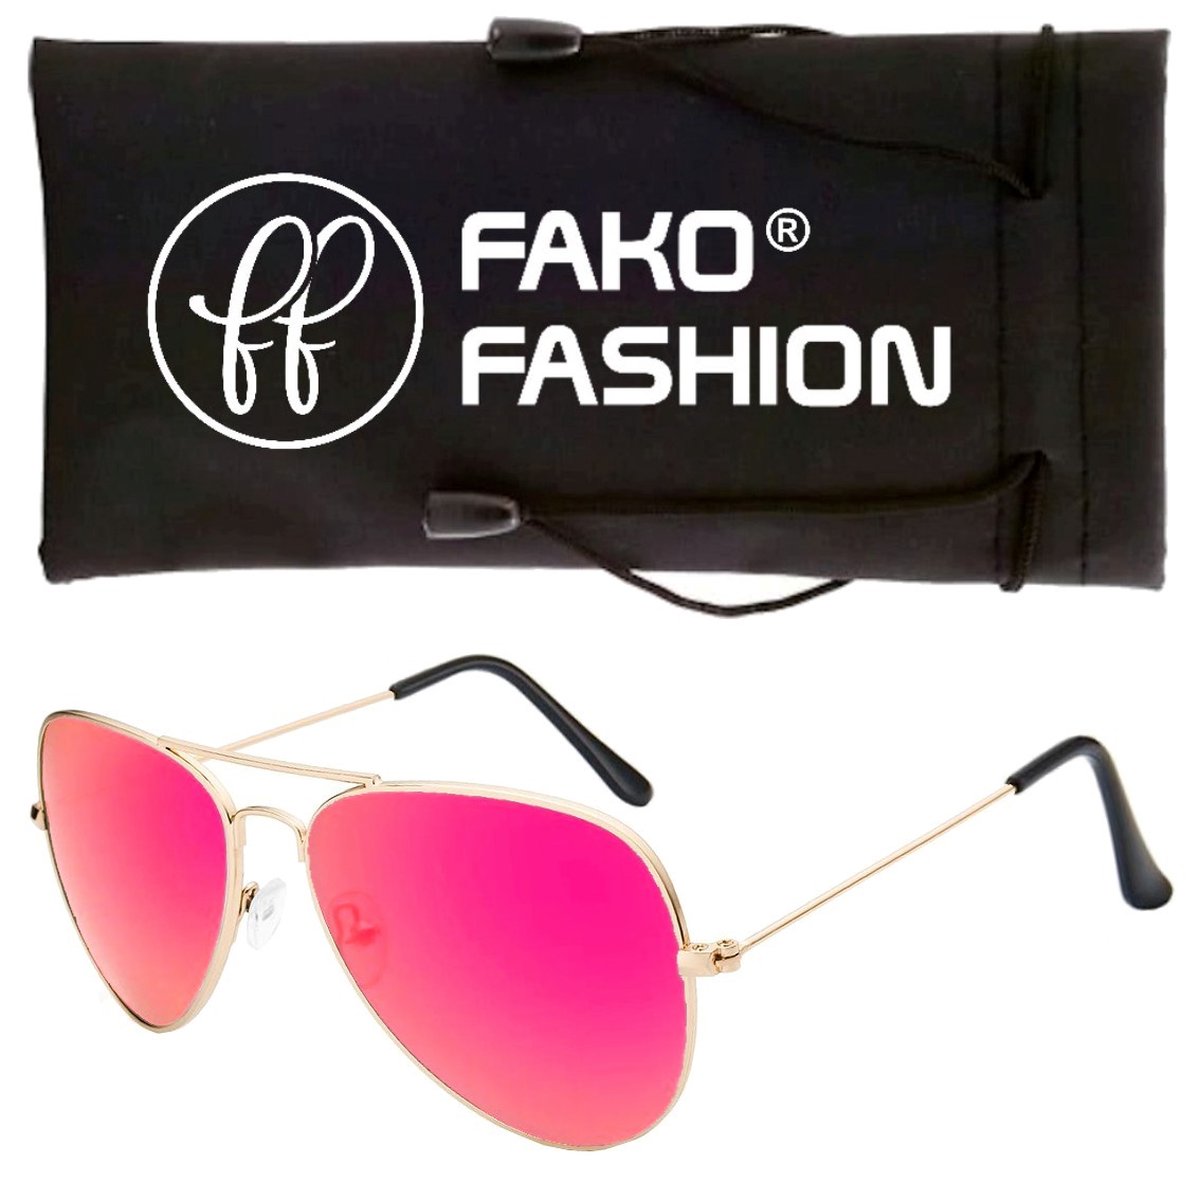 Fako Fashion® - Kinder Pilotenbril - Piloten Zonnebril - Goud - Fuchsia